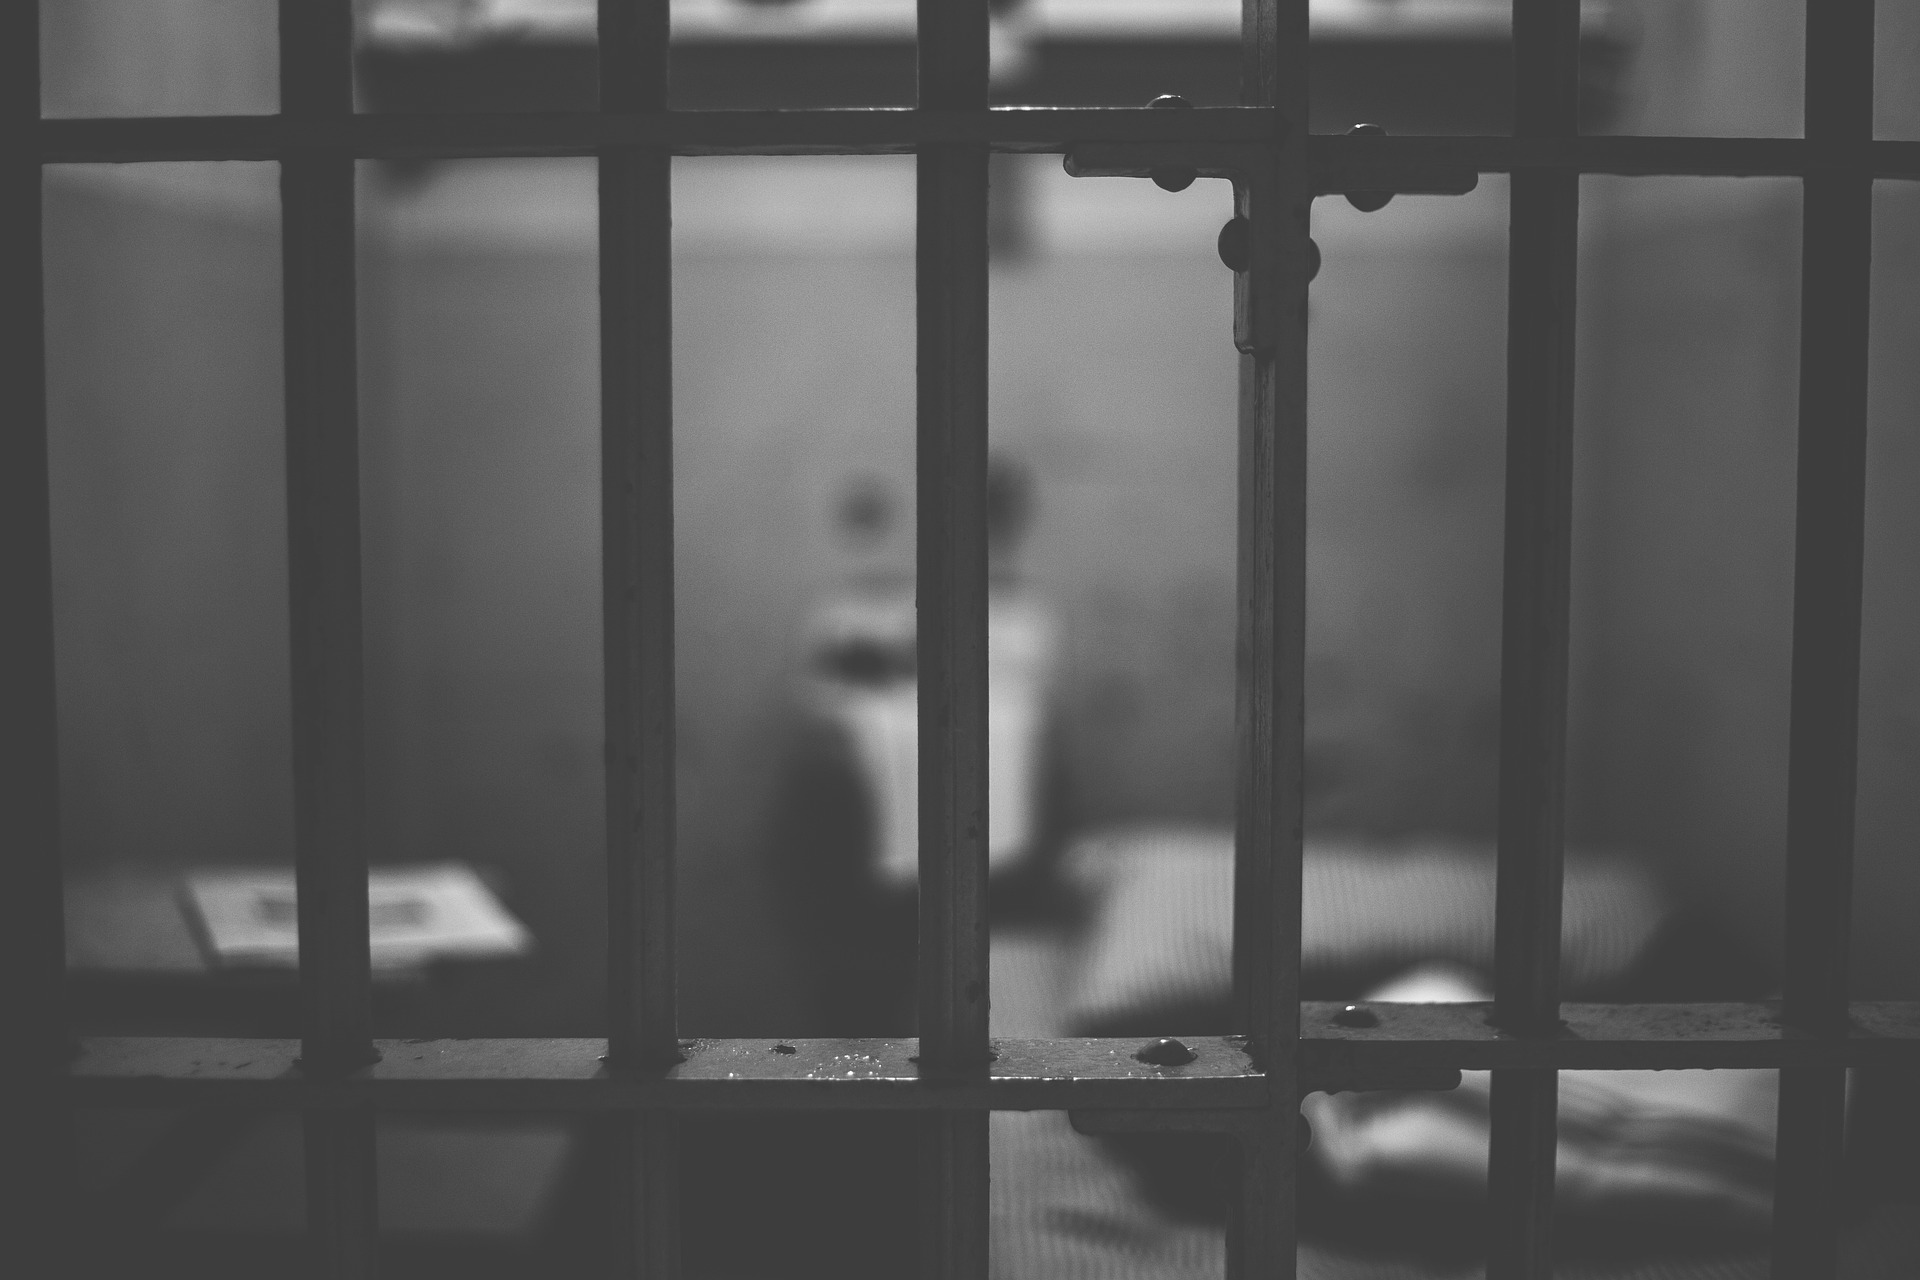 Egy fogvatartottal szexelt egy börtönőr a cellában – videó | szmo.hu